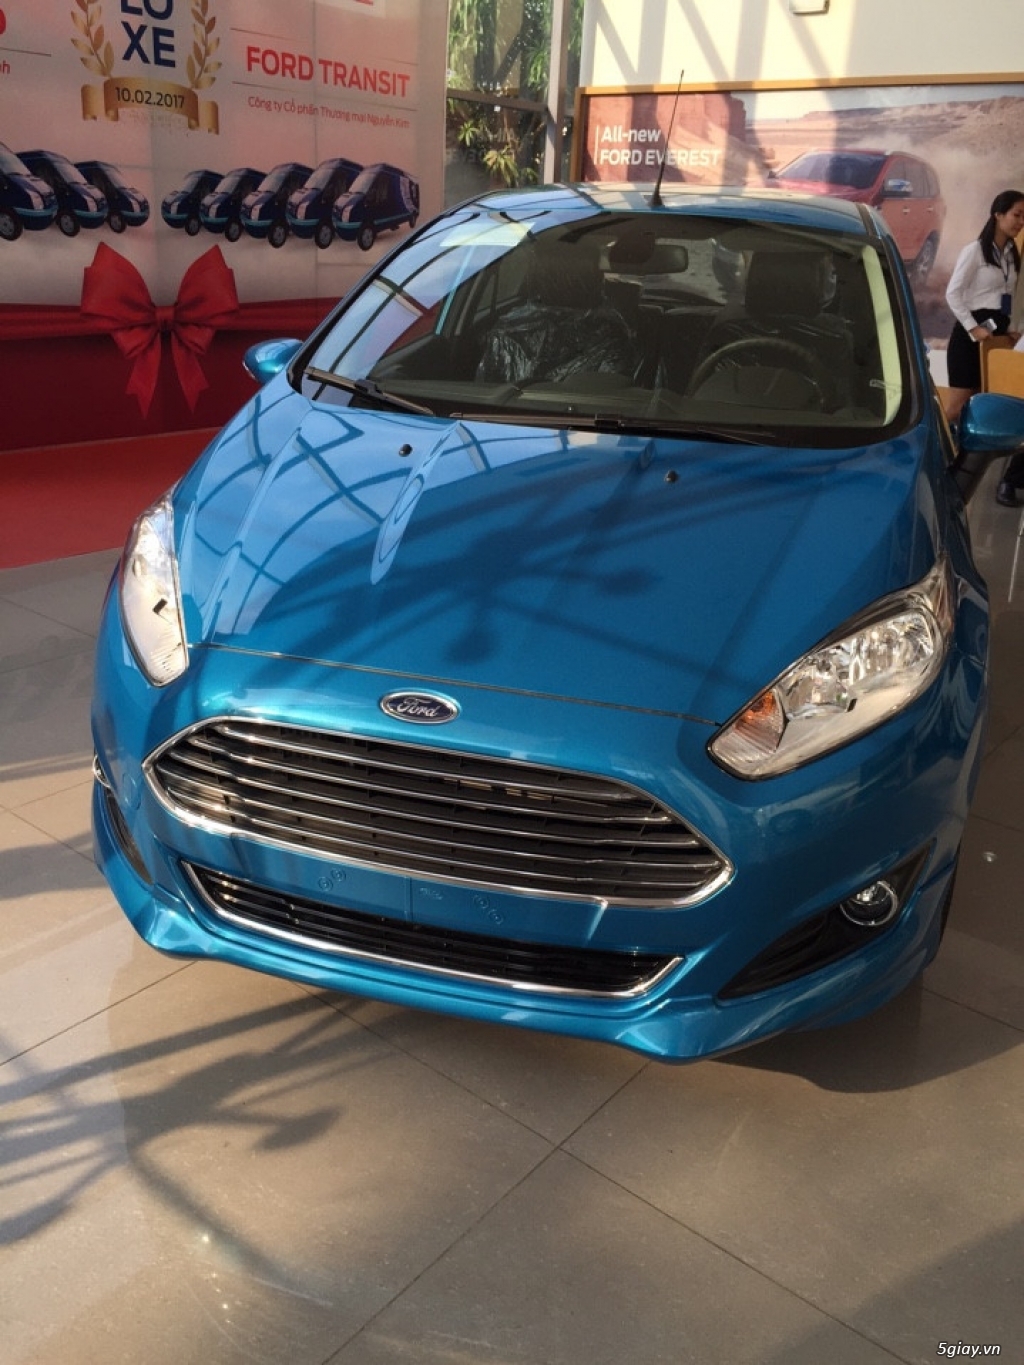 Ford Fiesta 1.0 Ecoboost 2017 Tặng Đến 50triệu+Phụ Kiện Cao Cấp - 7